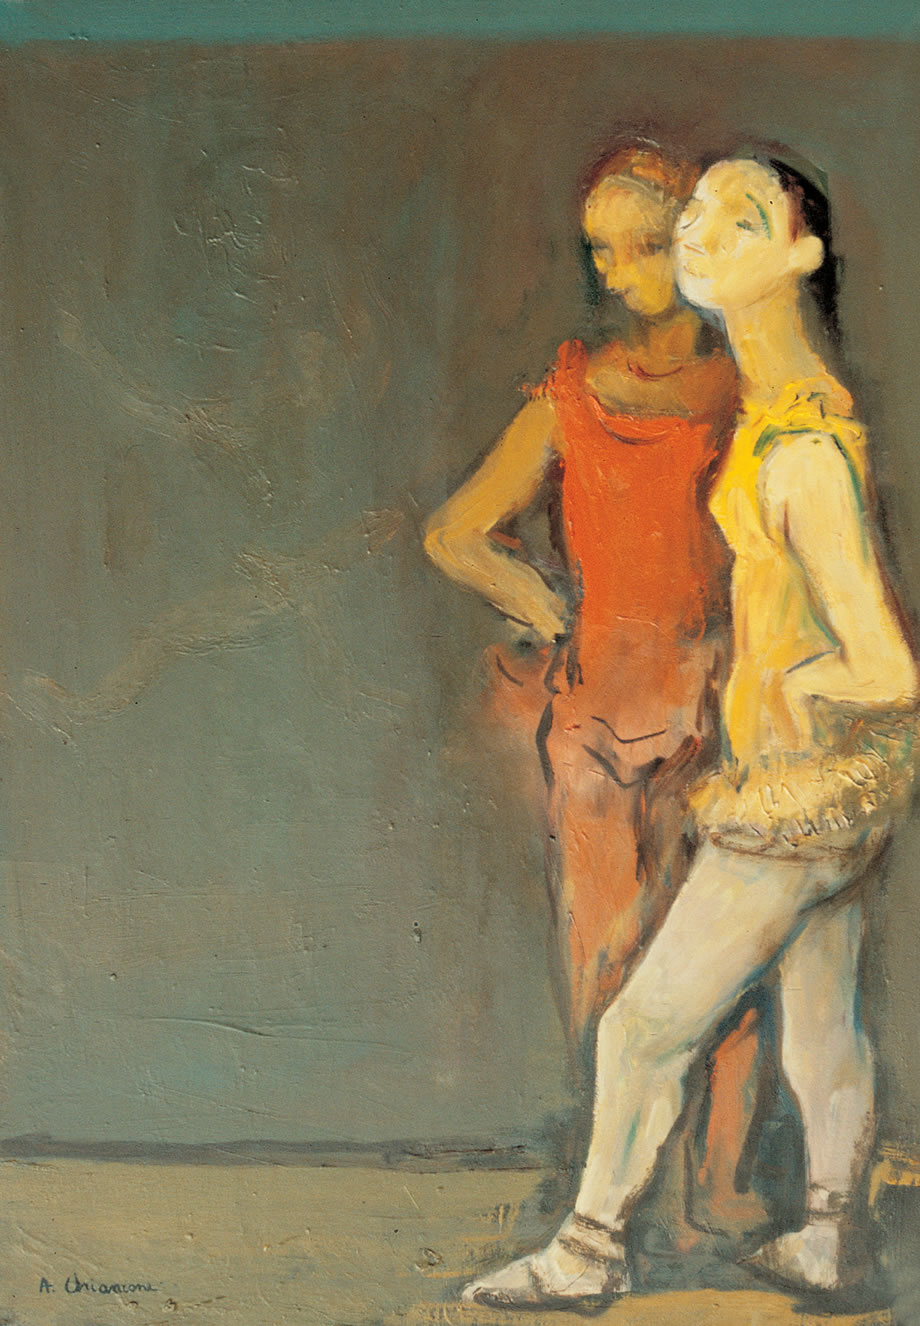 Ballerine anni ’70, olio su tela, cm 70x50, Milano, collezione privata